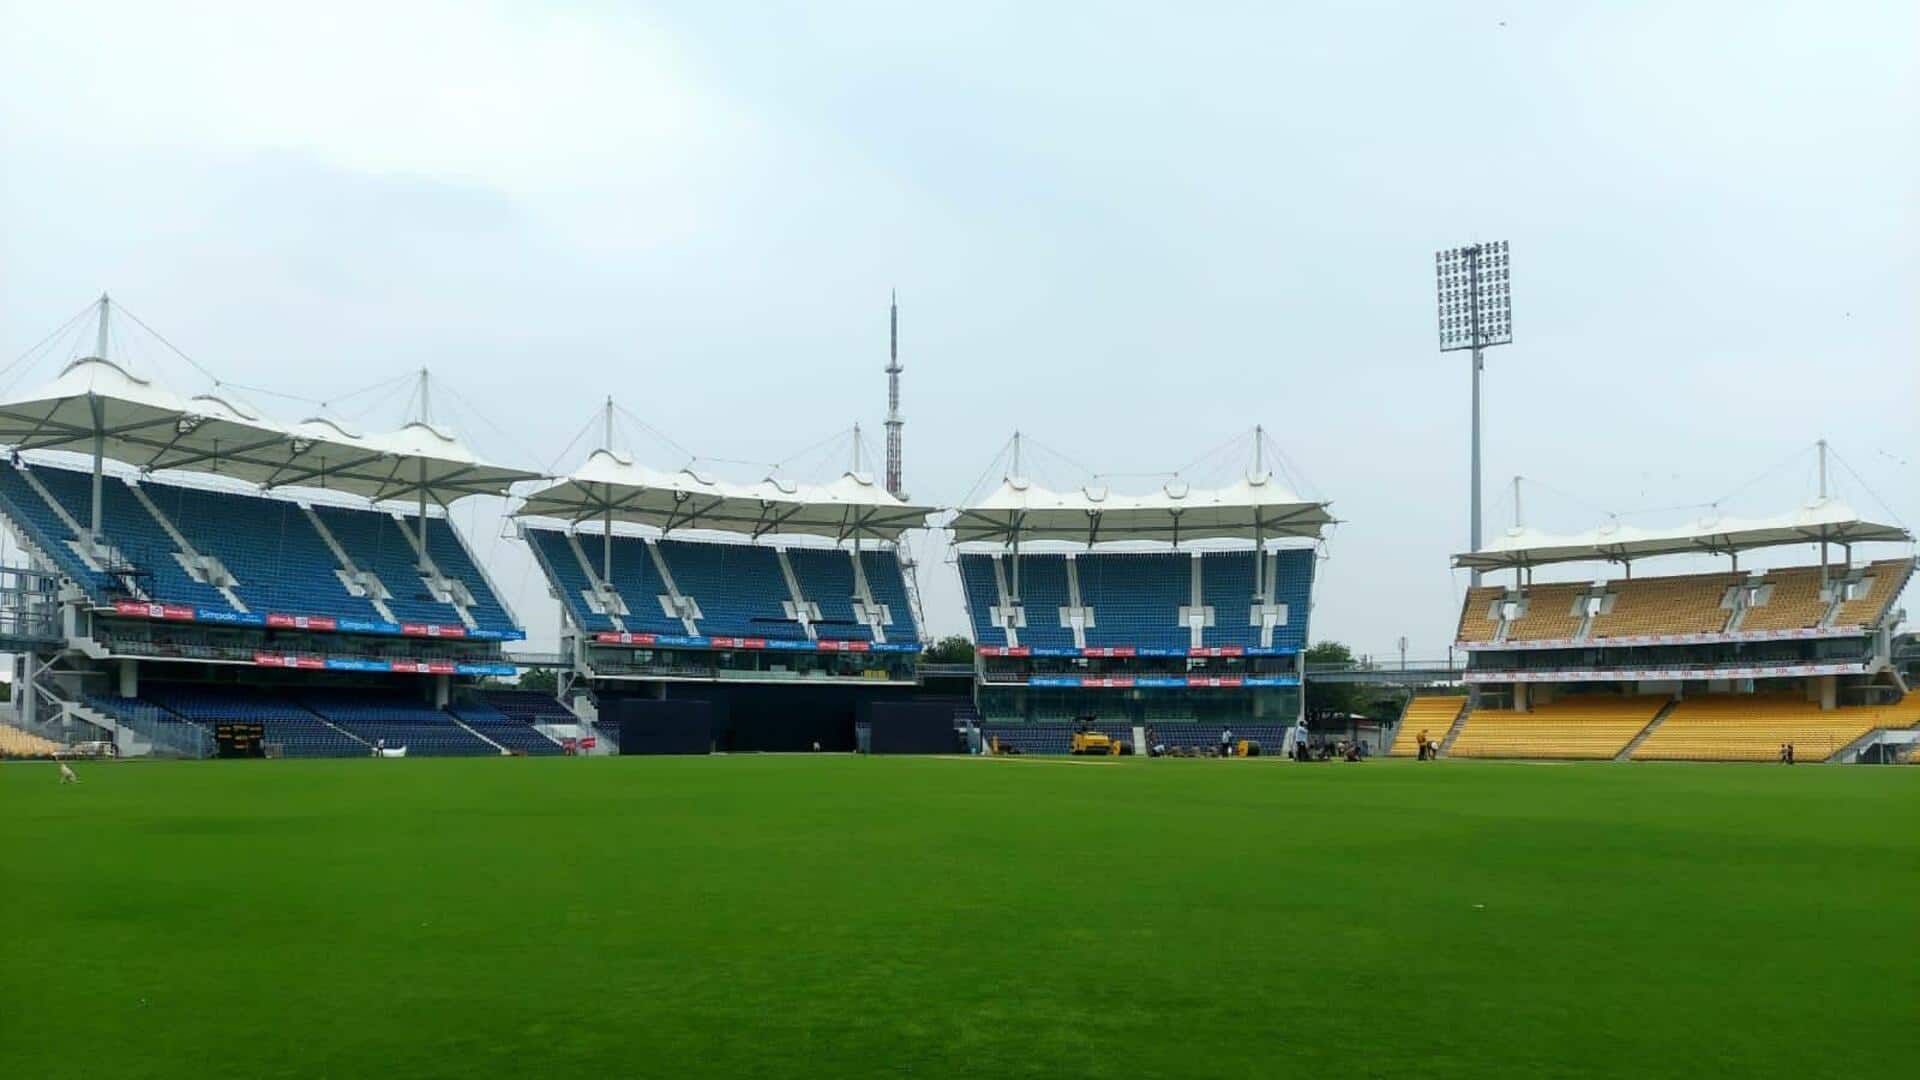 भारत बनाम ऑस्ट्रेलिया: चेन्नई के चेपक स्टेडियम में कैसा रहा है भारत का प्रदर्शन? जानें आंकड़े